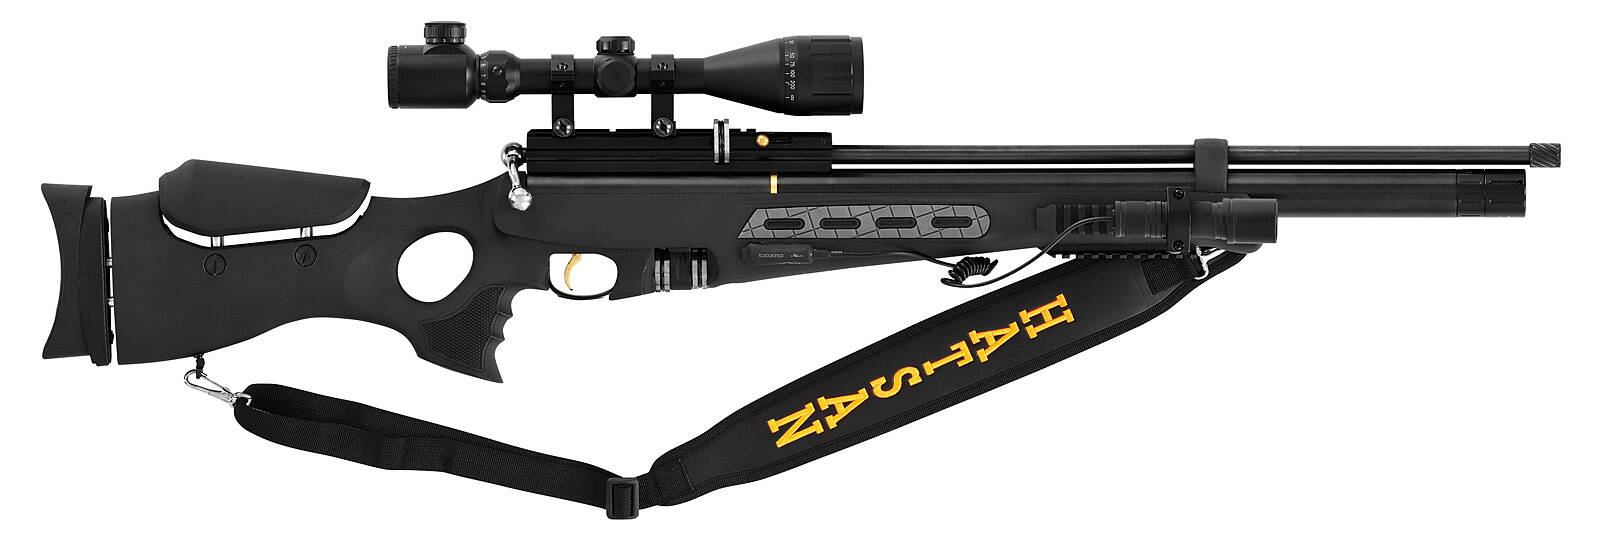 Bästa luftgevär - Hatsan BT65 RB Elite Kit 5,5mm